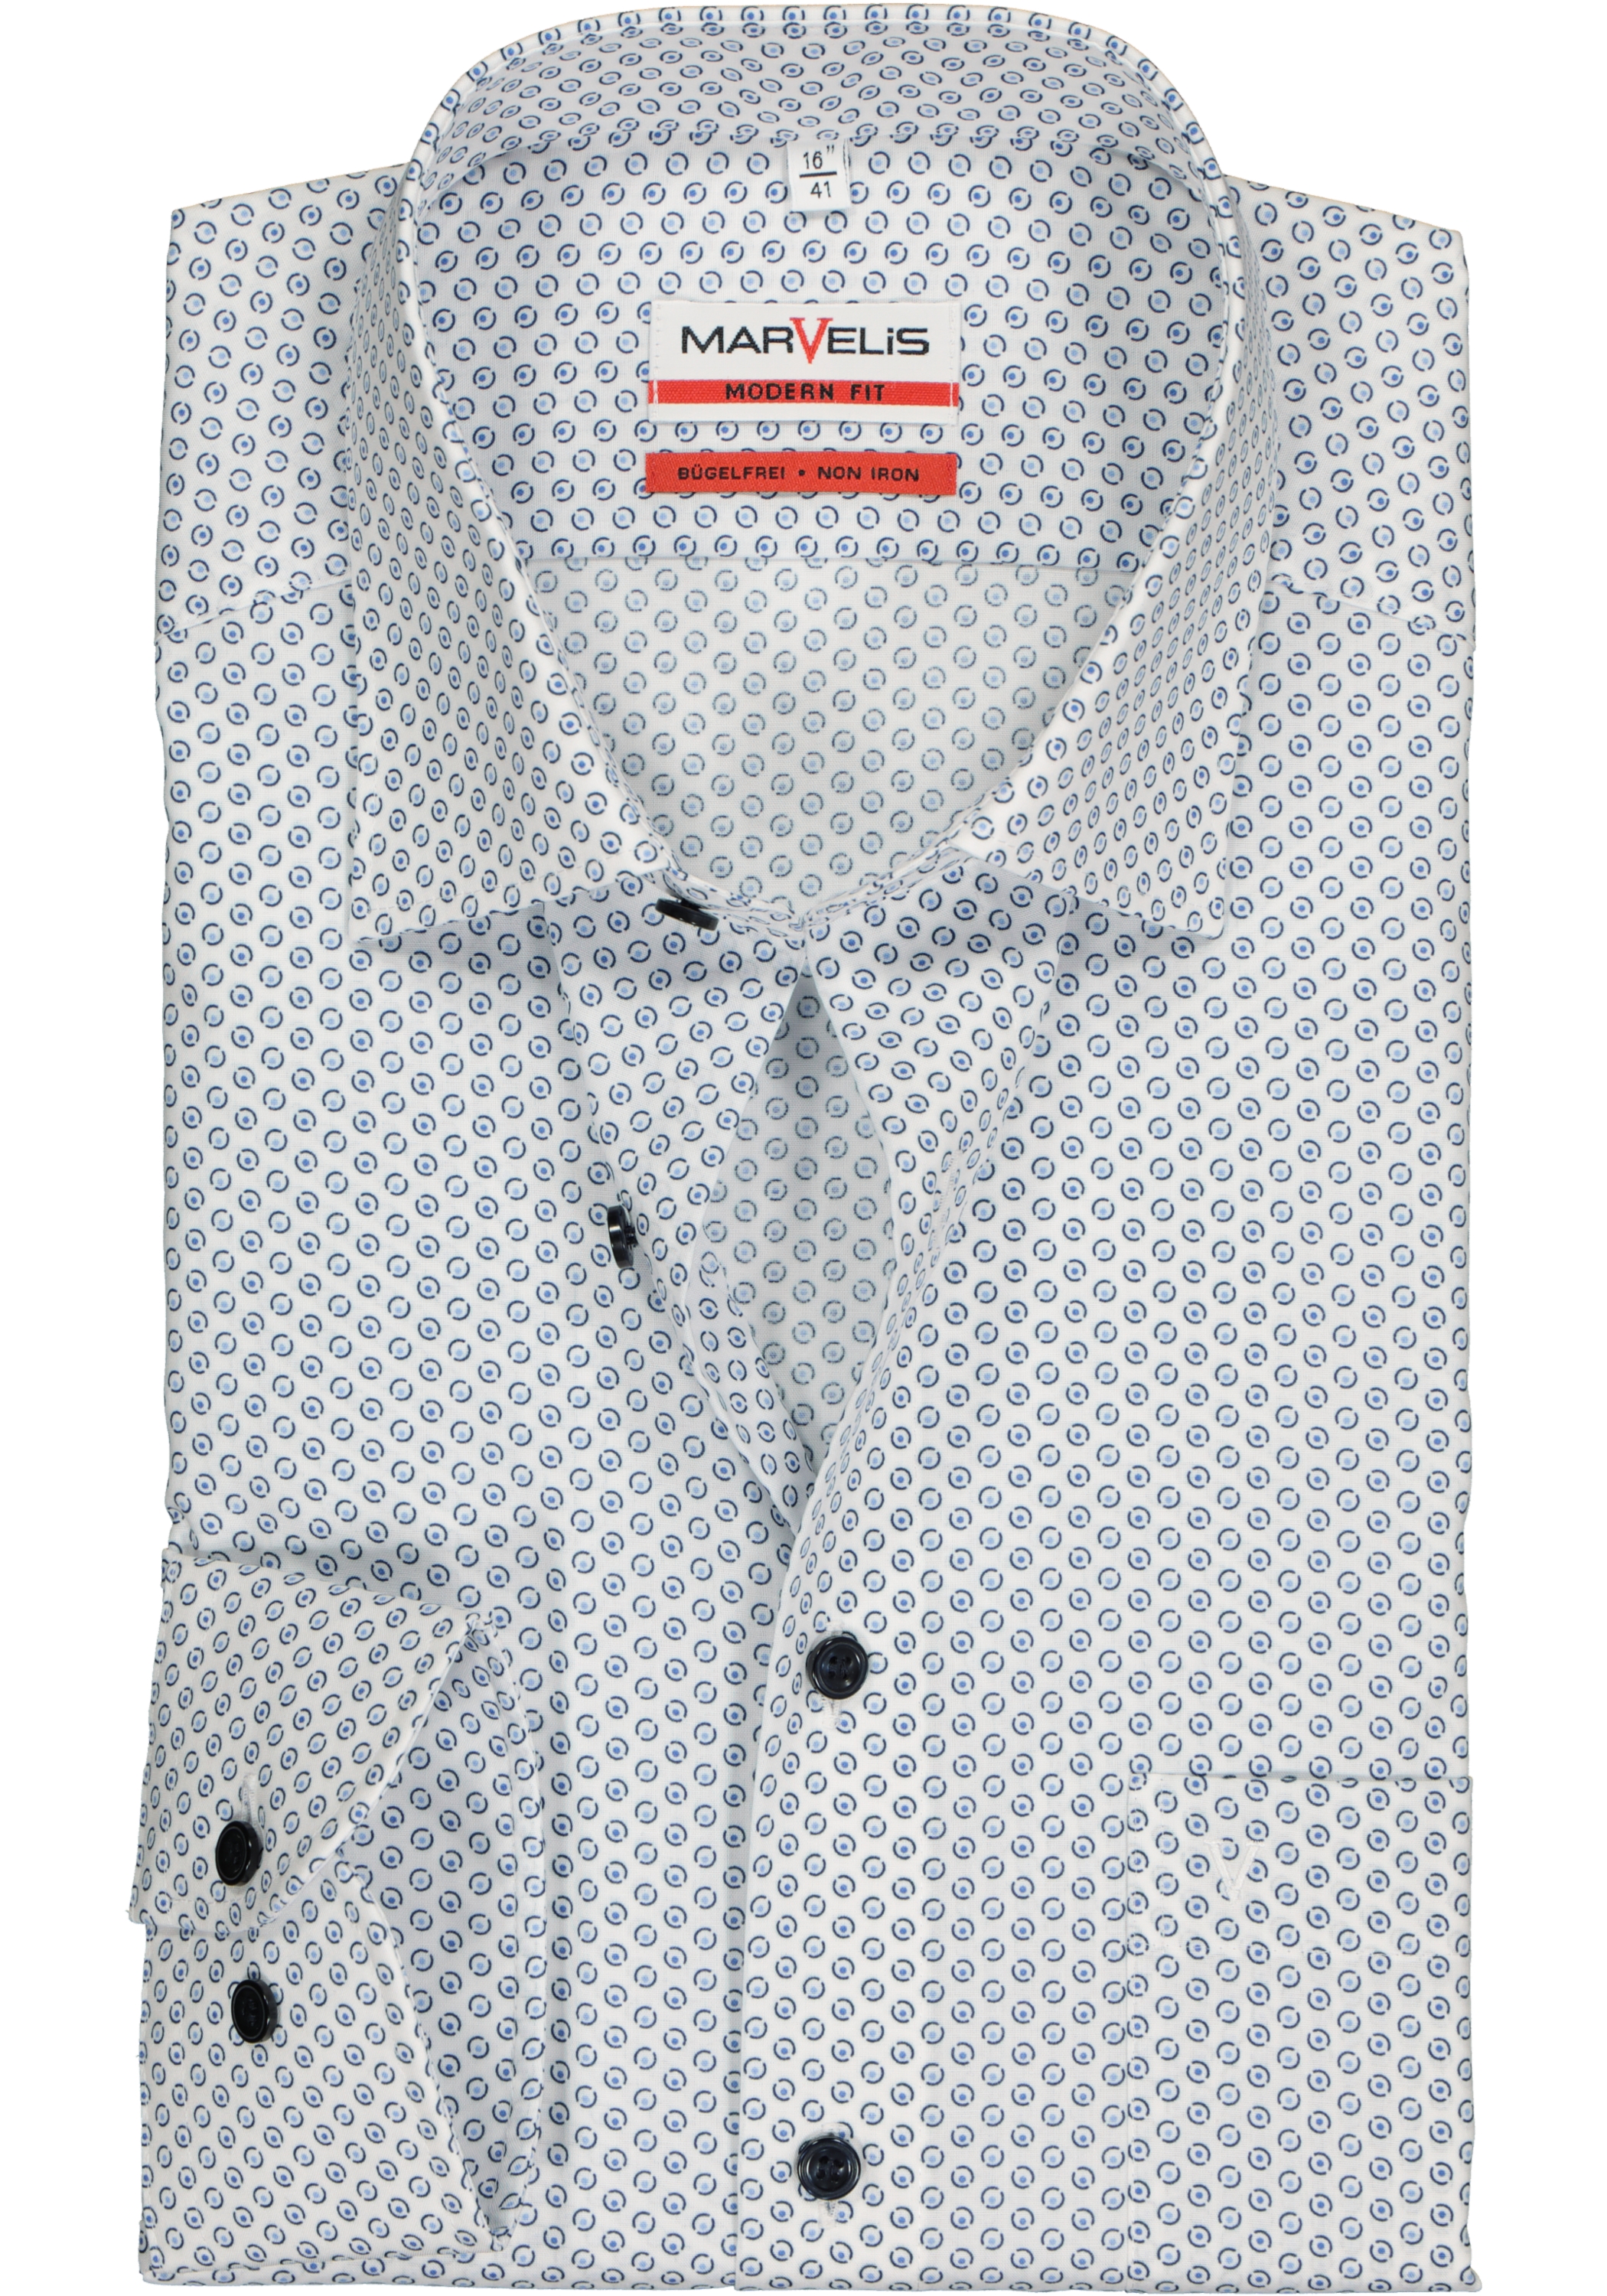 MARVELIS comfort fit overhemd, wit met blauw dessin